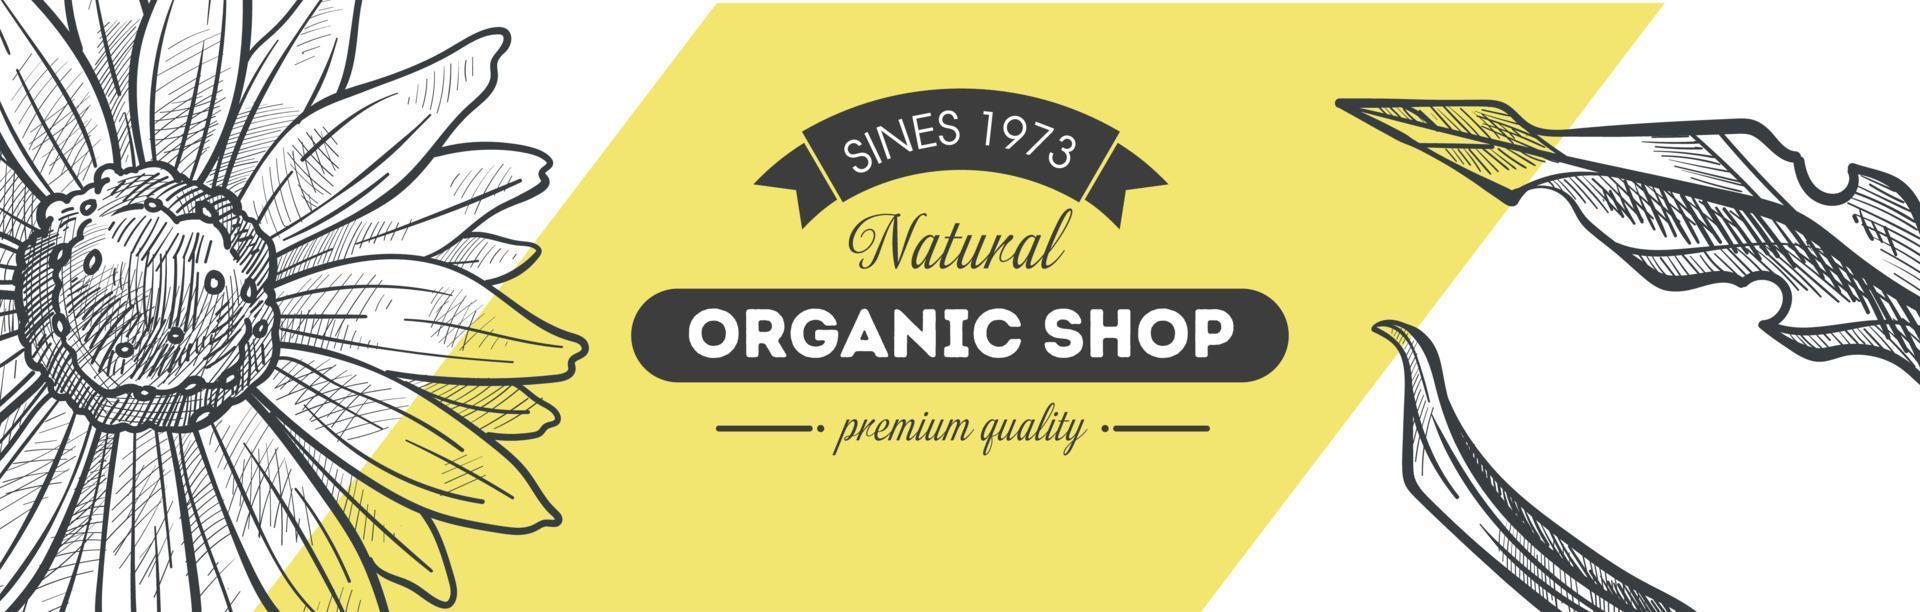 biologico negozio con premio qualità naturale prodotti vettore